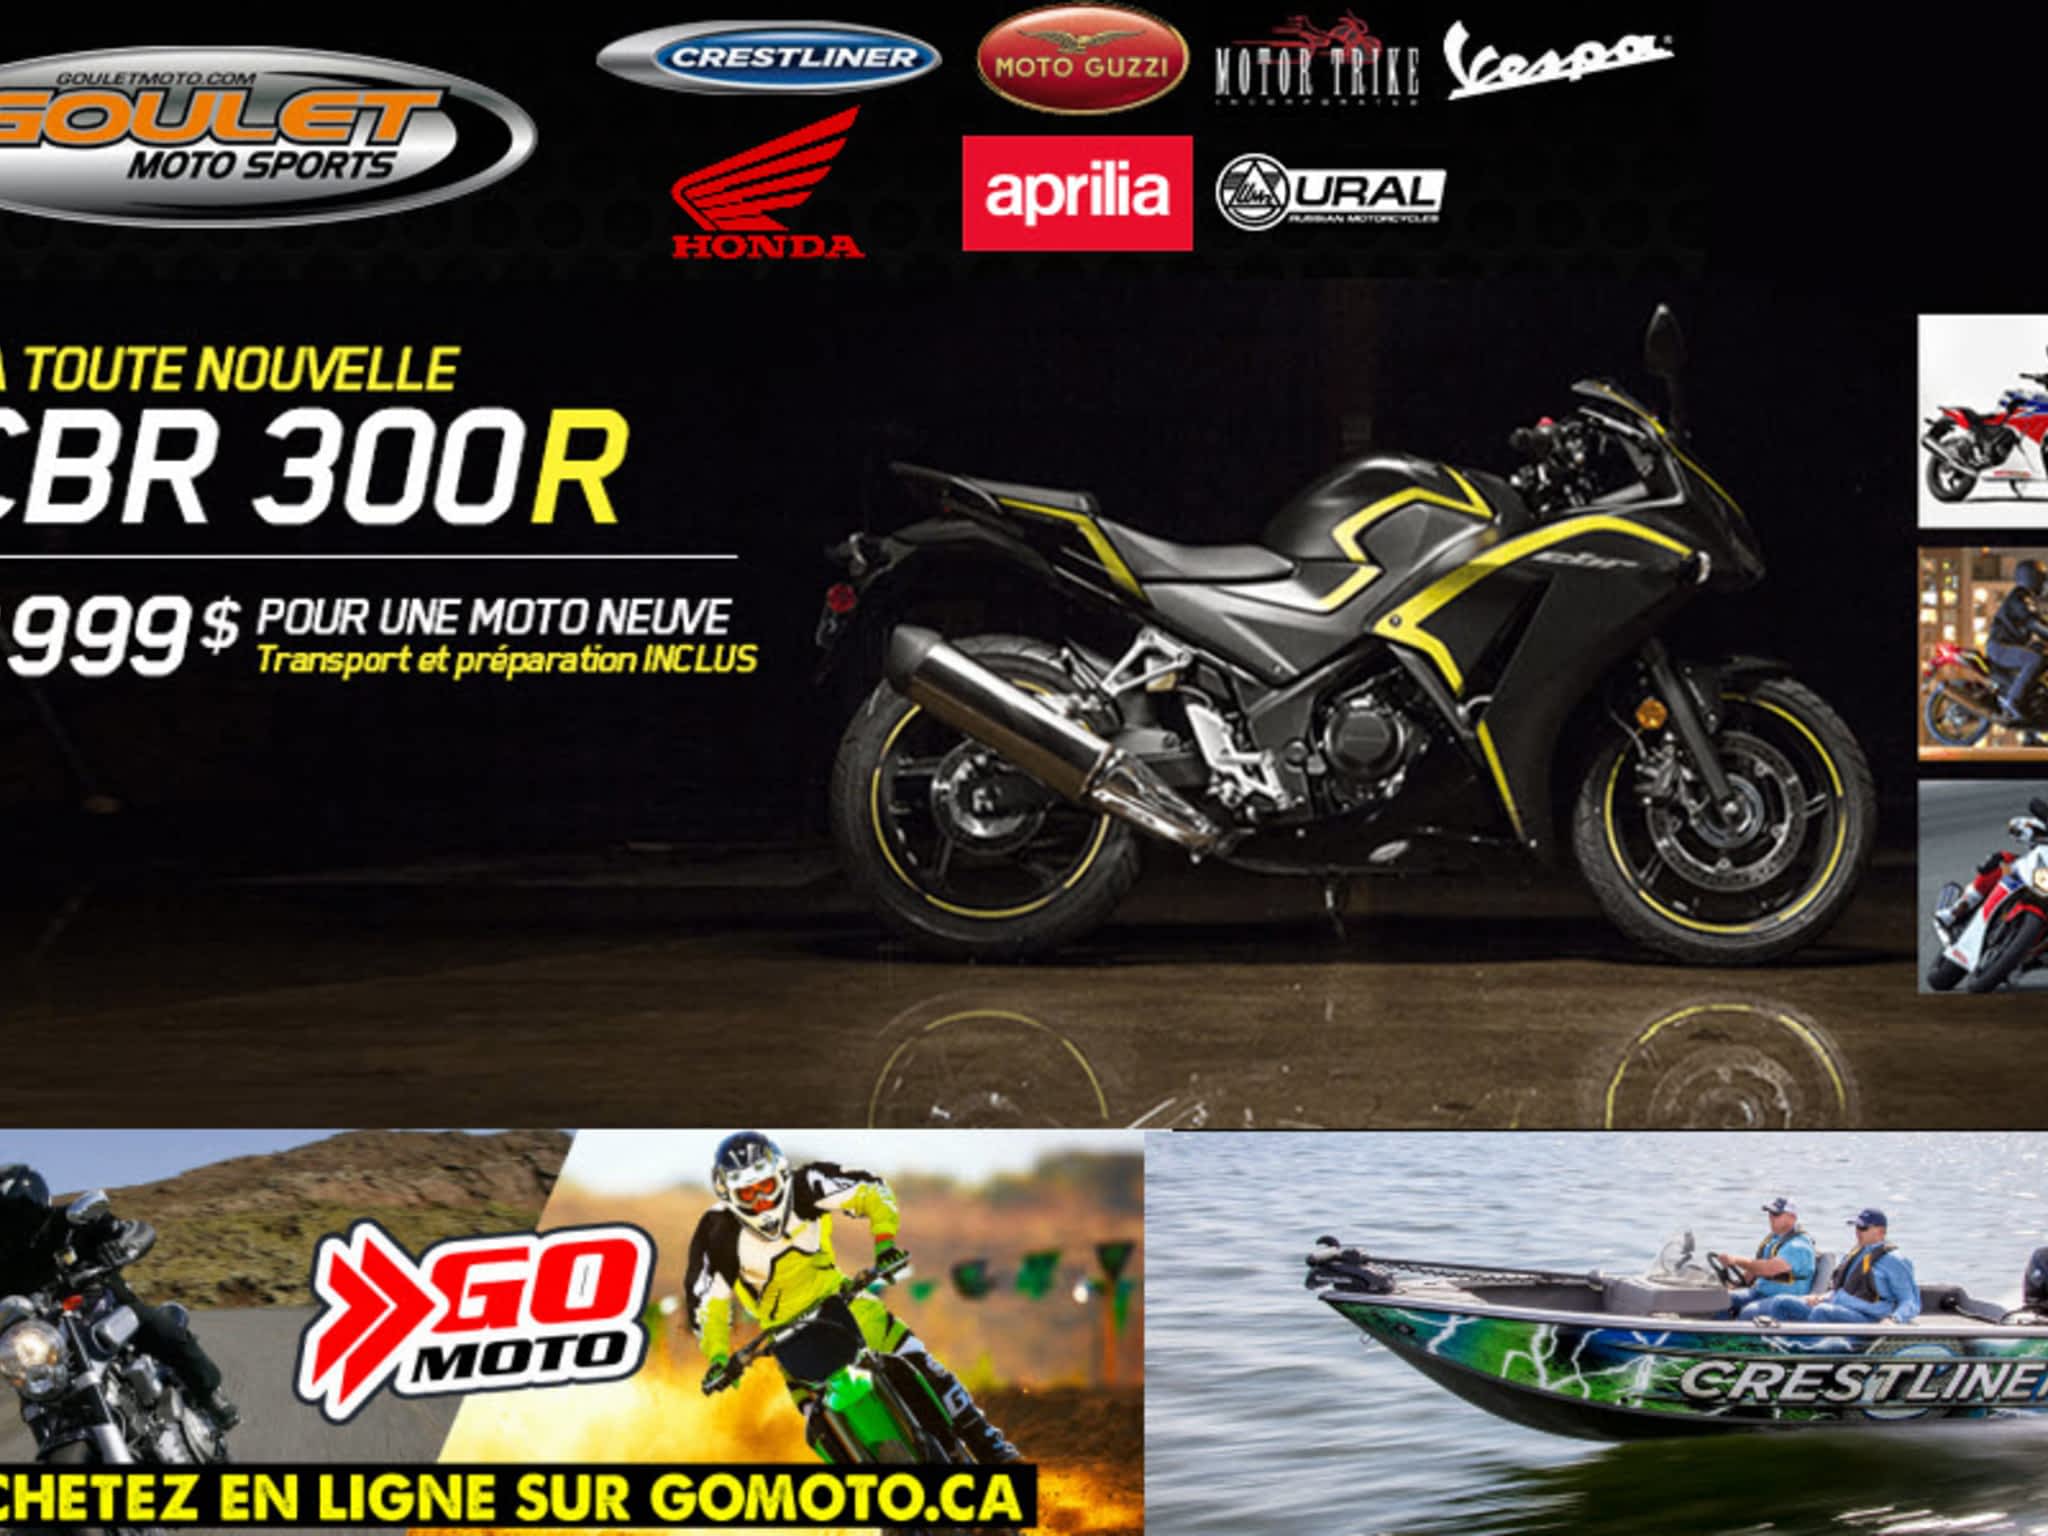 photo Goulet Moto Sports